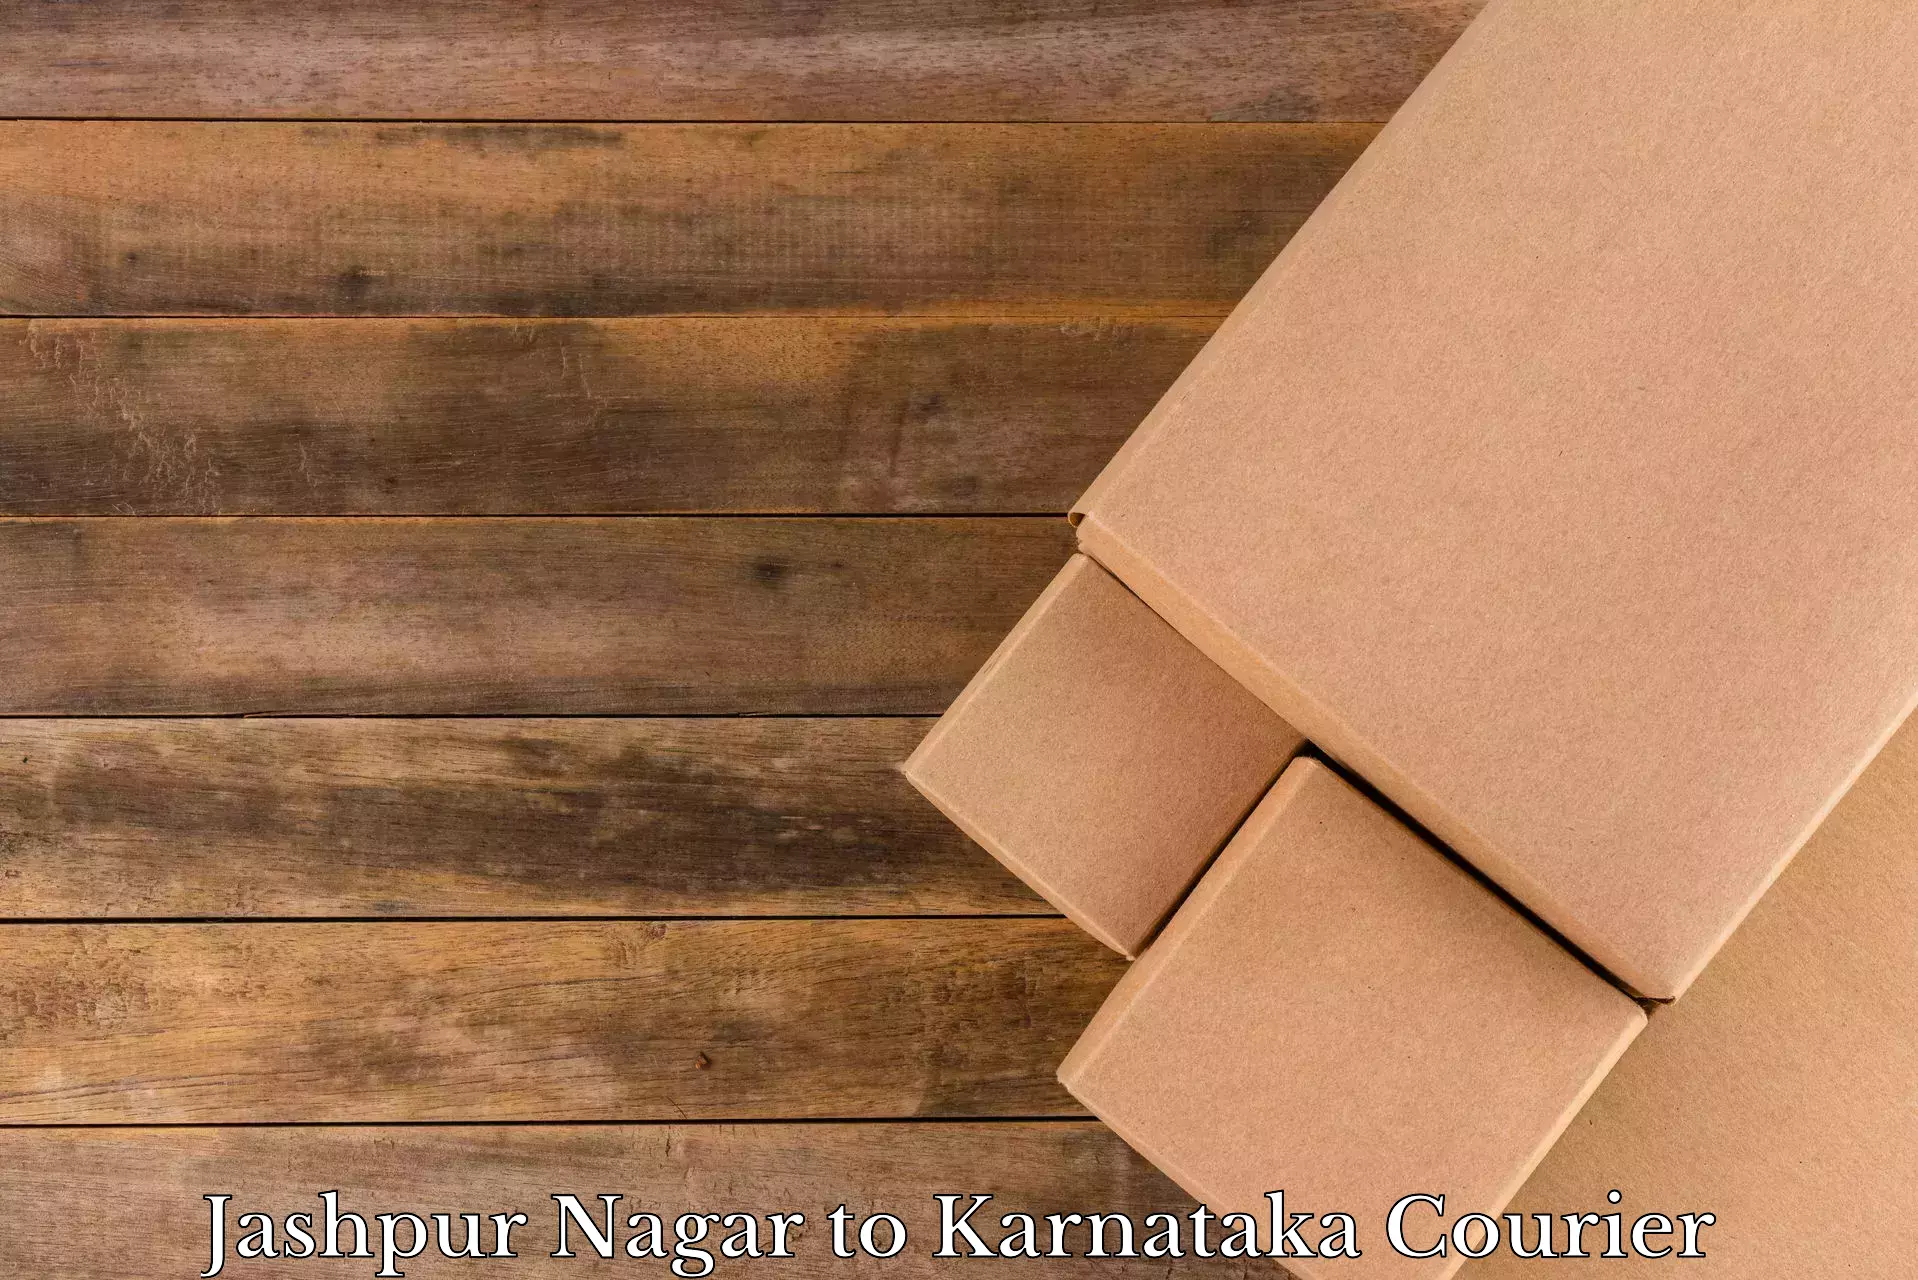 Effective moving solutions Jashpur Nagar to Karnataka